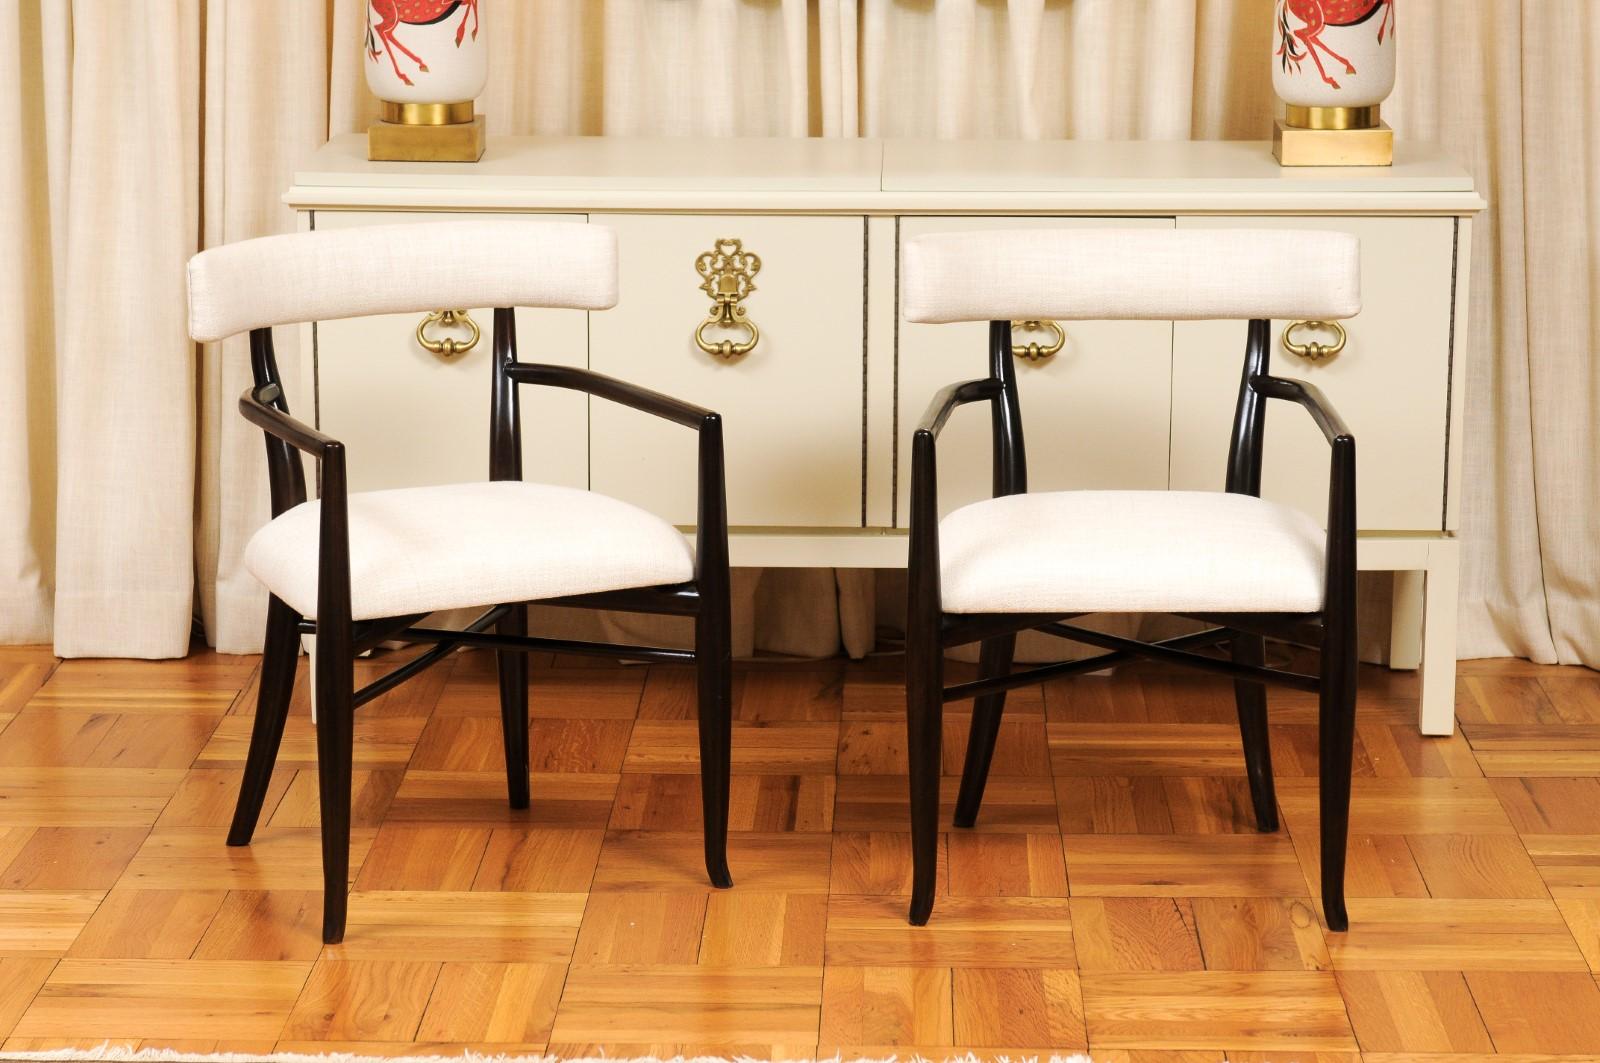 Ce magnifique ensemble de chaises de salle à manger est expédié tel qu'il a été photographié par des professionnels et décrit dans le texte de l'annonce : Méticuleusement restauré par des professionnels, nouvellement tapissé et complètement prêt à